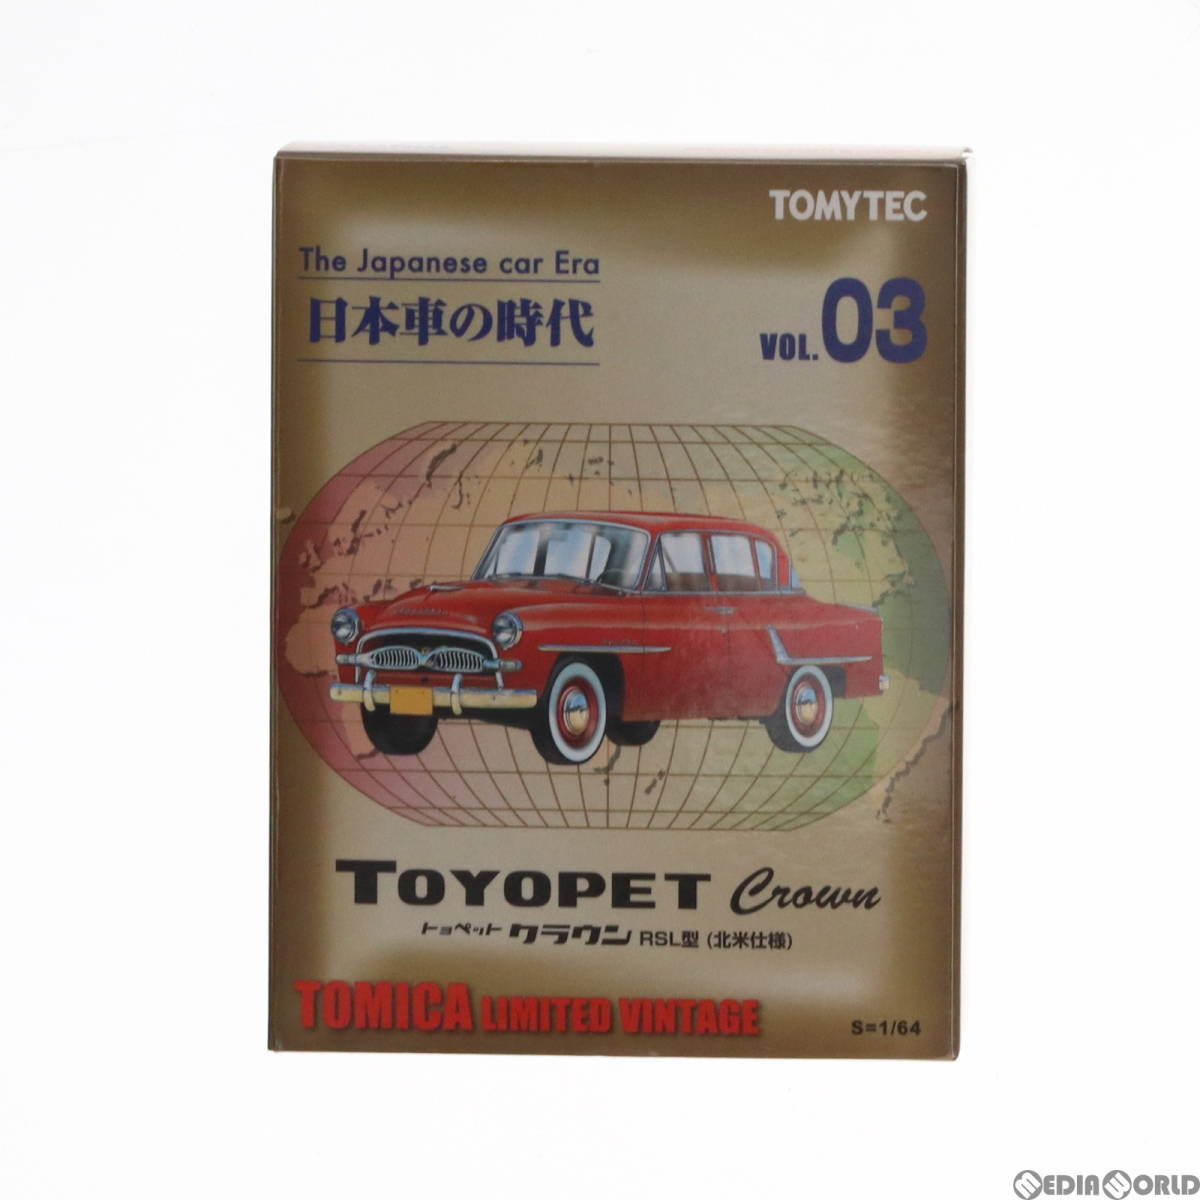 【中古】[MDL]トミカリミテッドヴィンテージ 日本車の時代3 TLV トヨペットクラウン 米国仕様(レッド) 1/64 完成品 ミニカー(258384) TOMYTの画像2